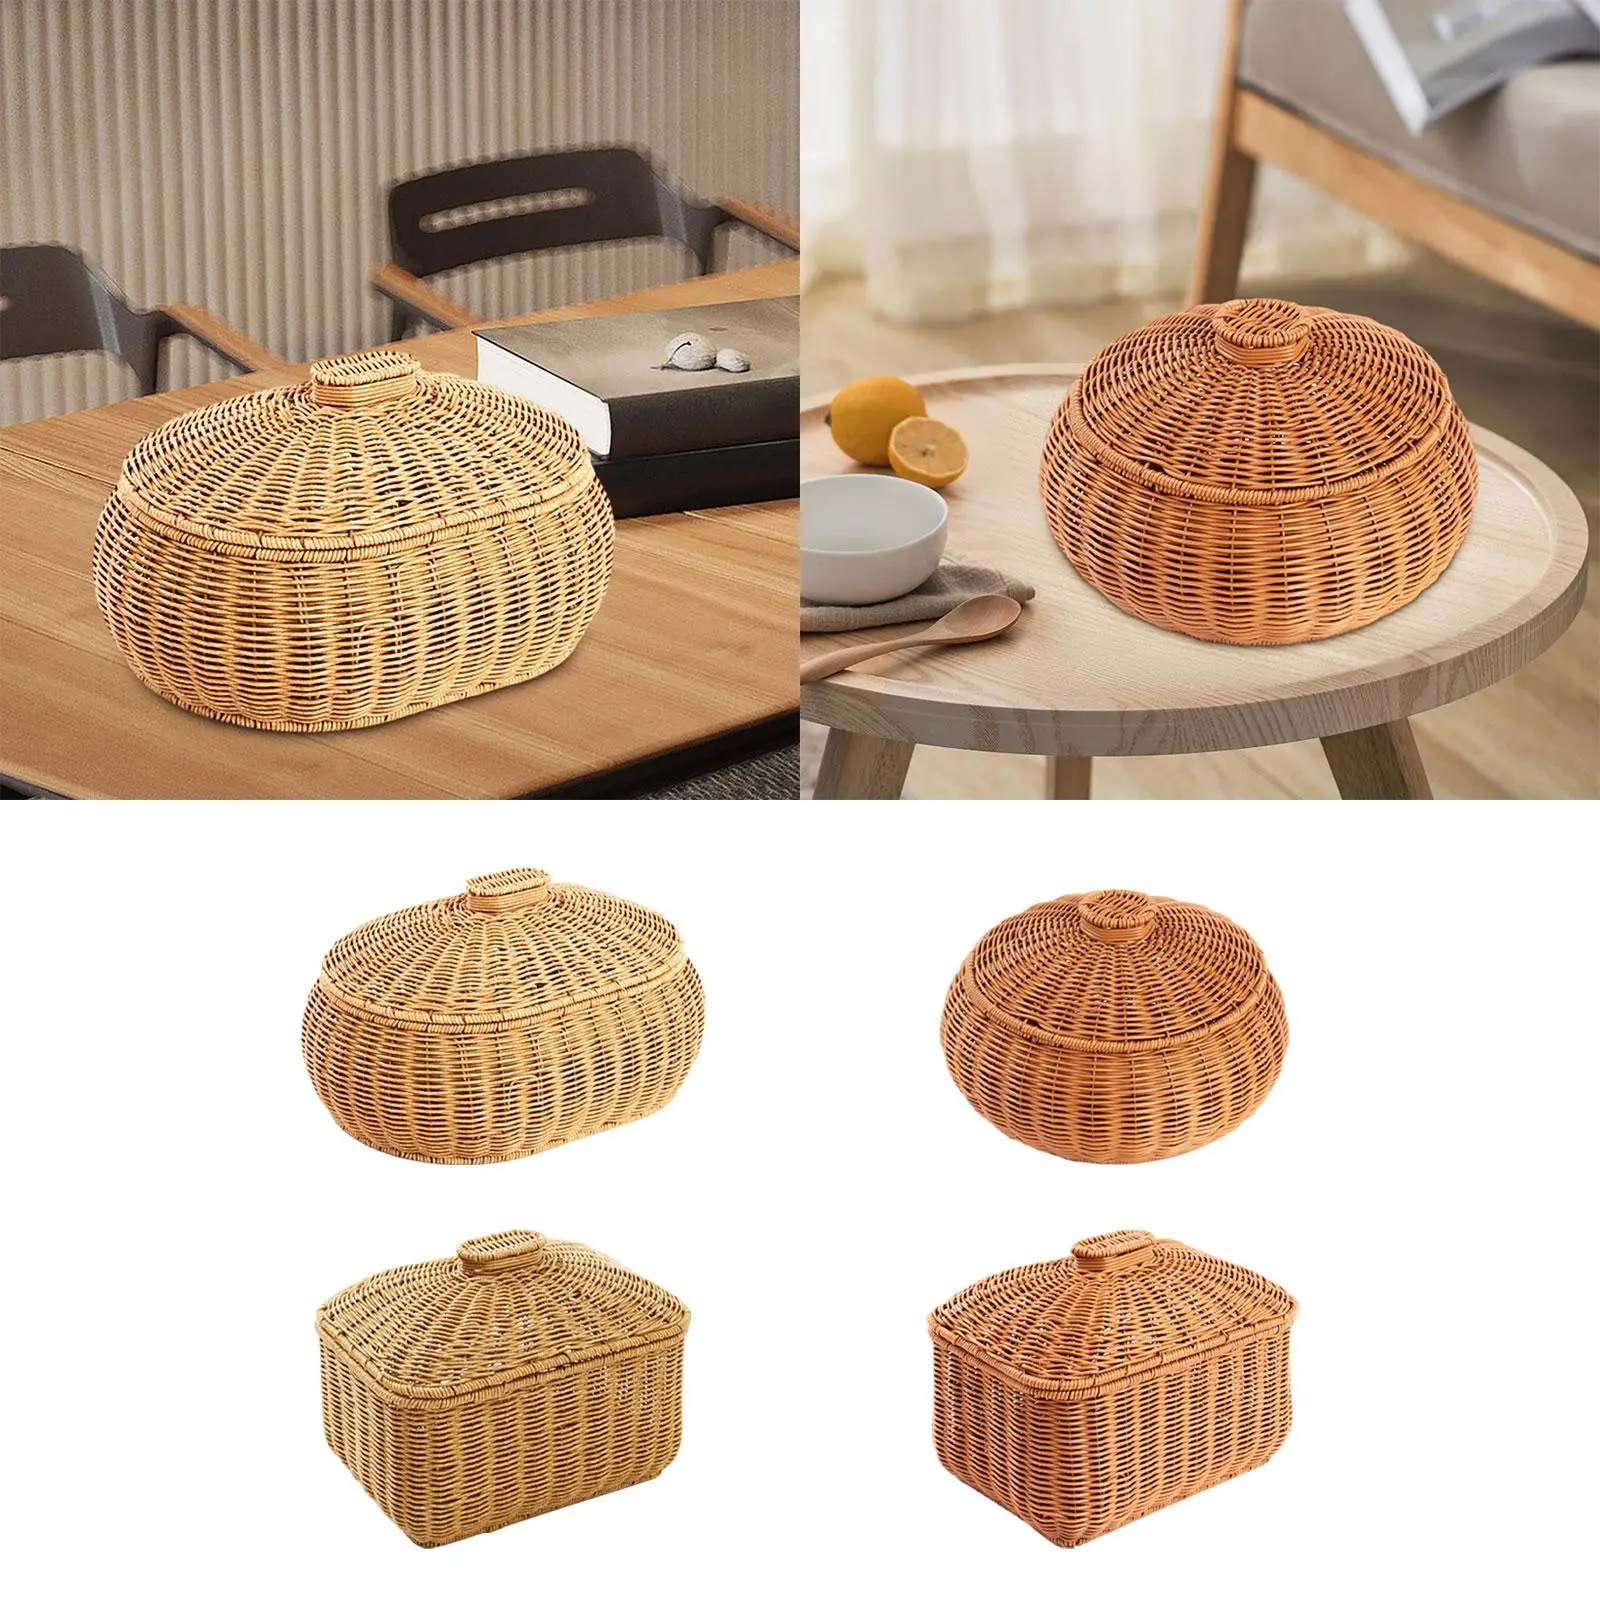 Handwoven Basket Home Décor Shelf Baskets Bin with Lid Food Storage Basket for Bathroom Living Room Bedroom Kitchen Shelves